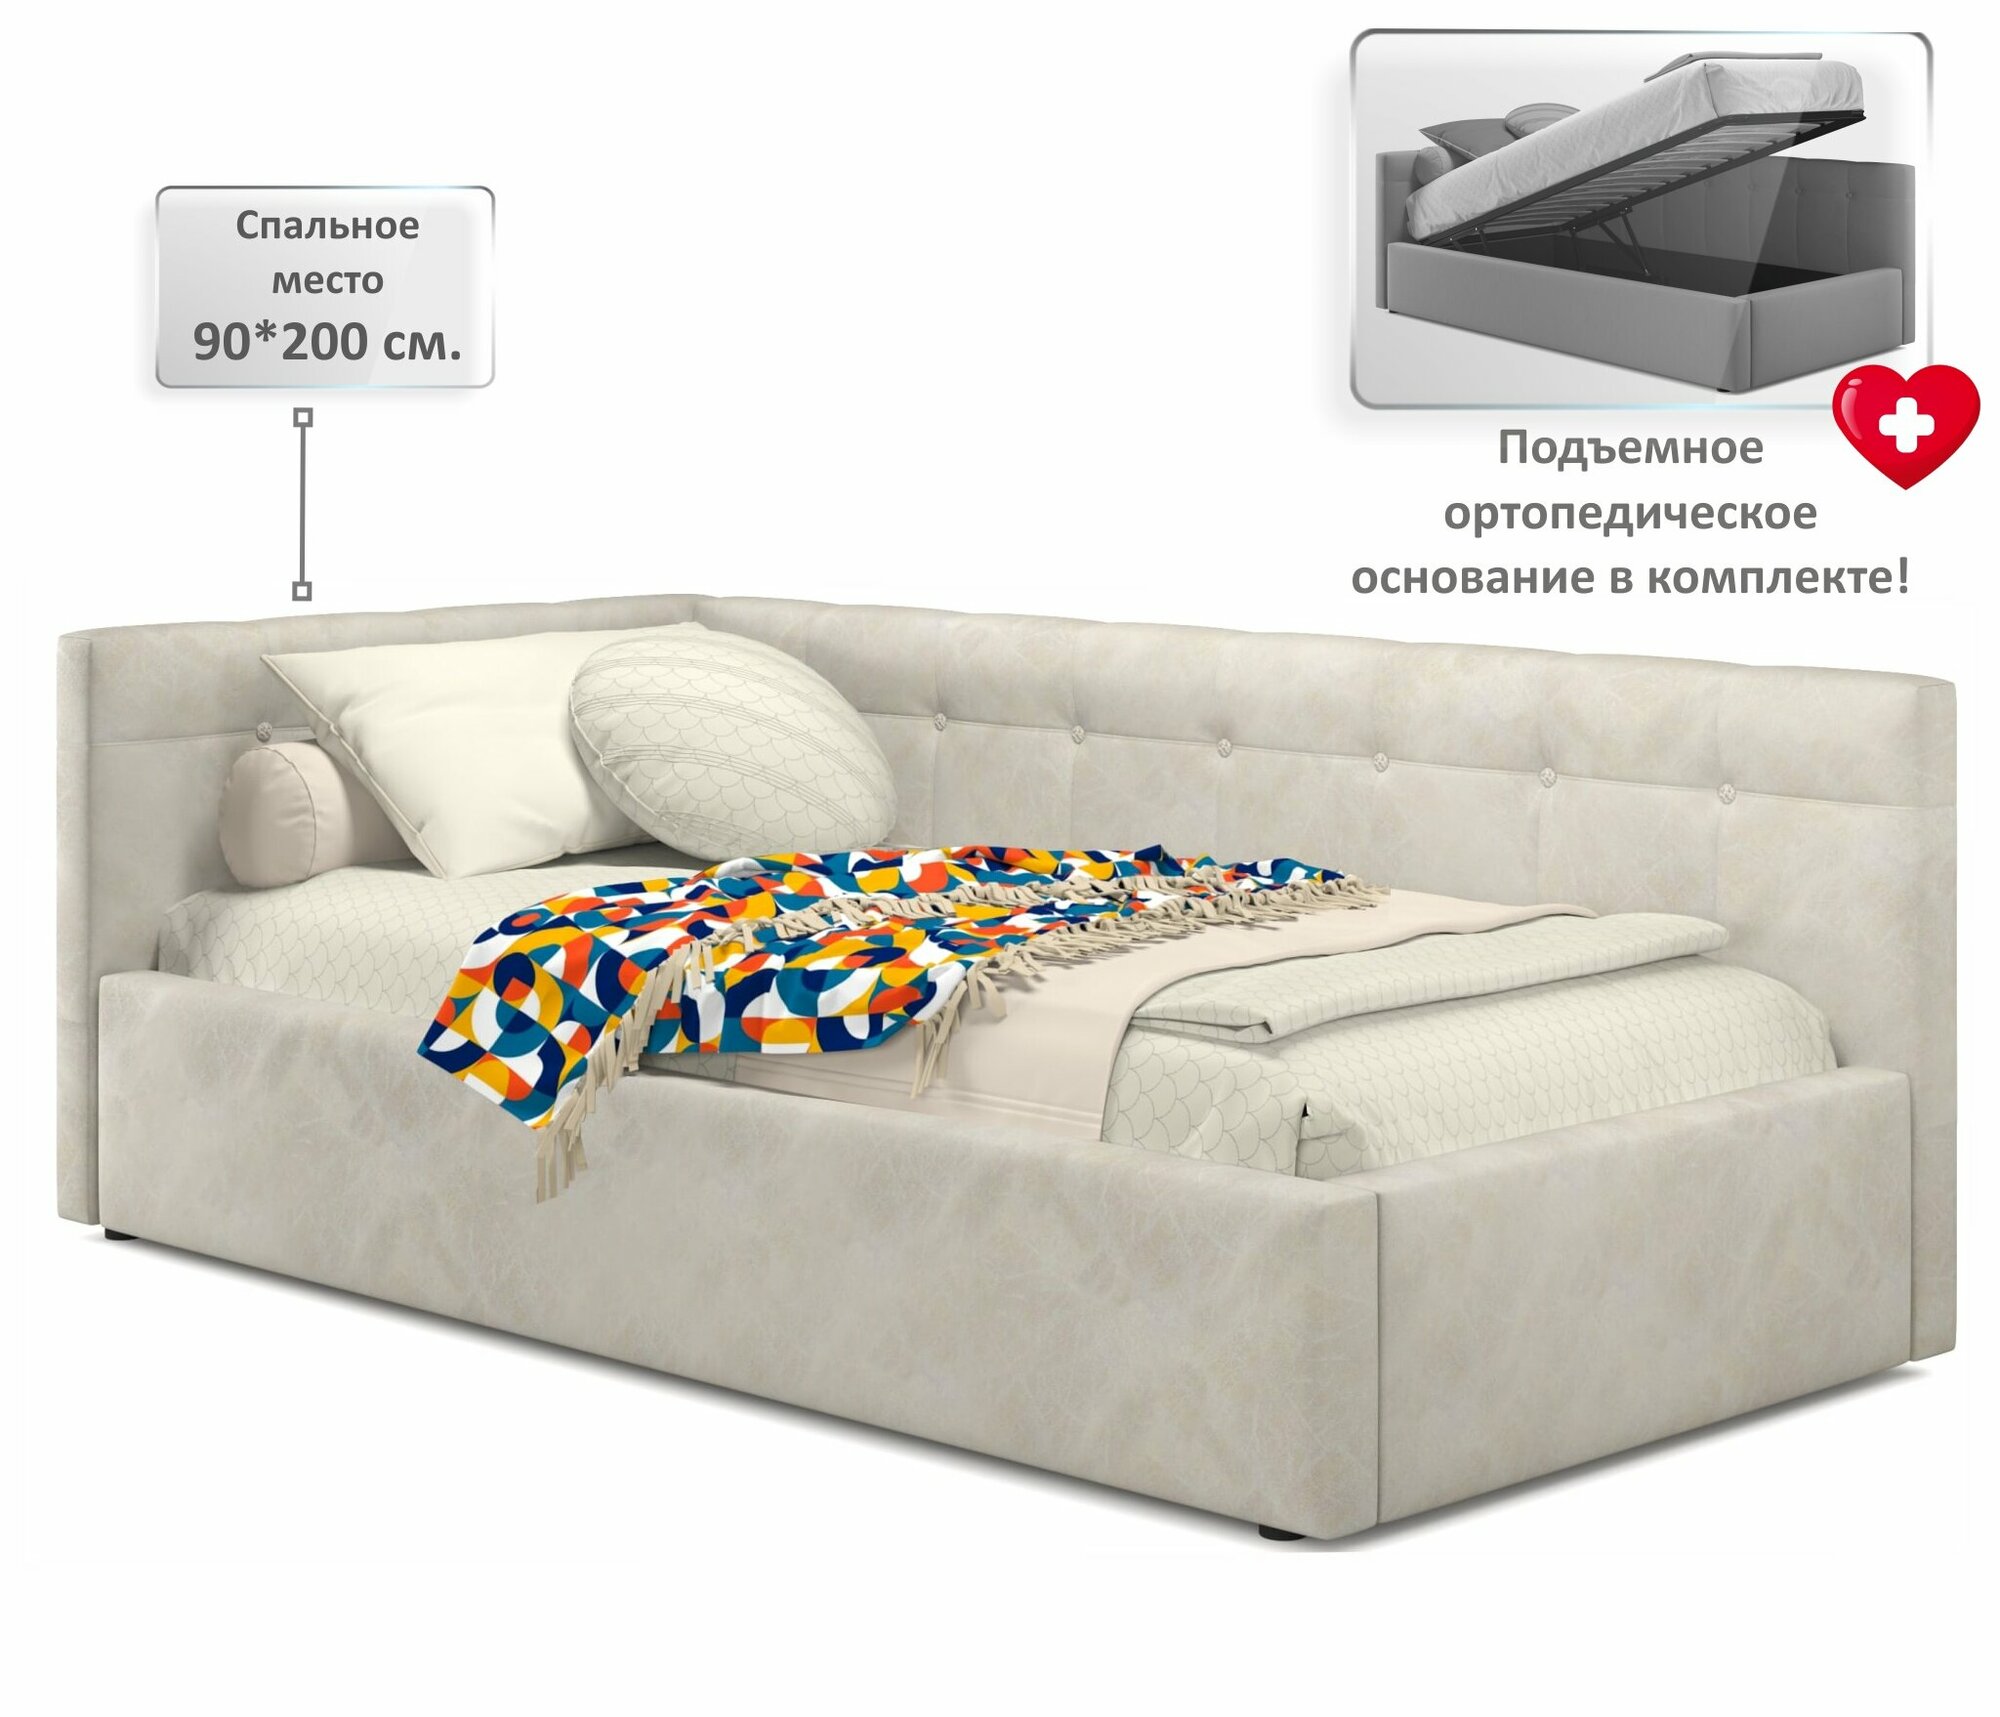 Односпальная кровать-тахта Bonna 900 кожа кремовый угловая Zeppelin, с подъемным механизмом, 90х200, мягкая из экокожи, с ящиком для хранения